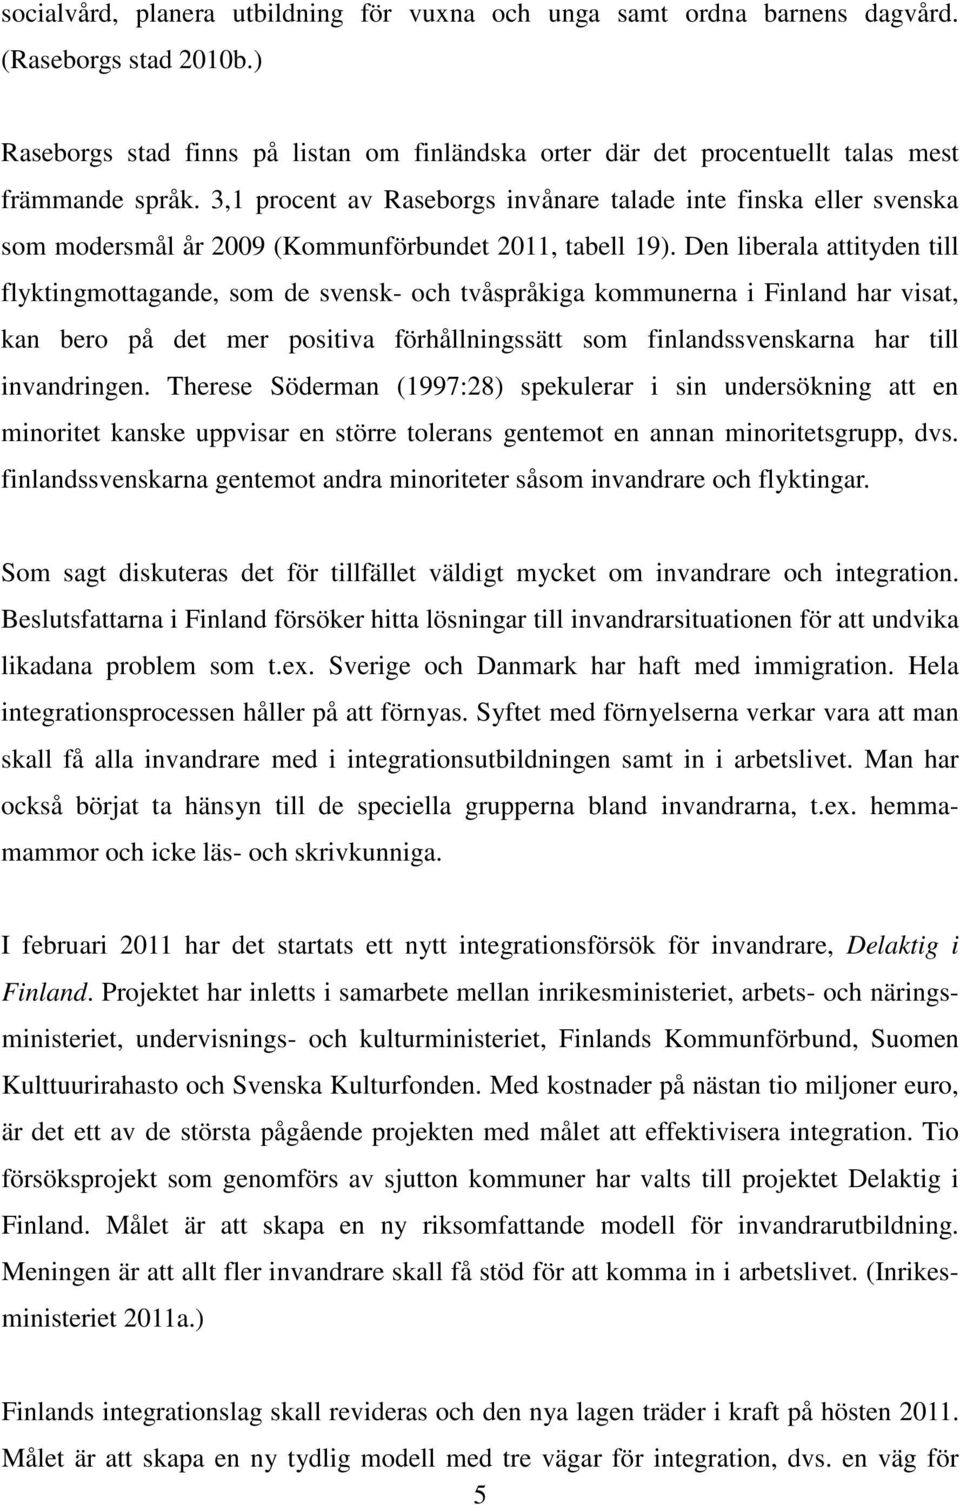 3,1 procent av Raseborgs invånare talade inte finska eller svenska som modersmål år 2009 (Kommunförbundet 2011, tabell 19).